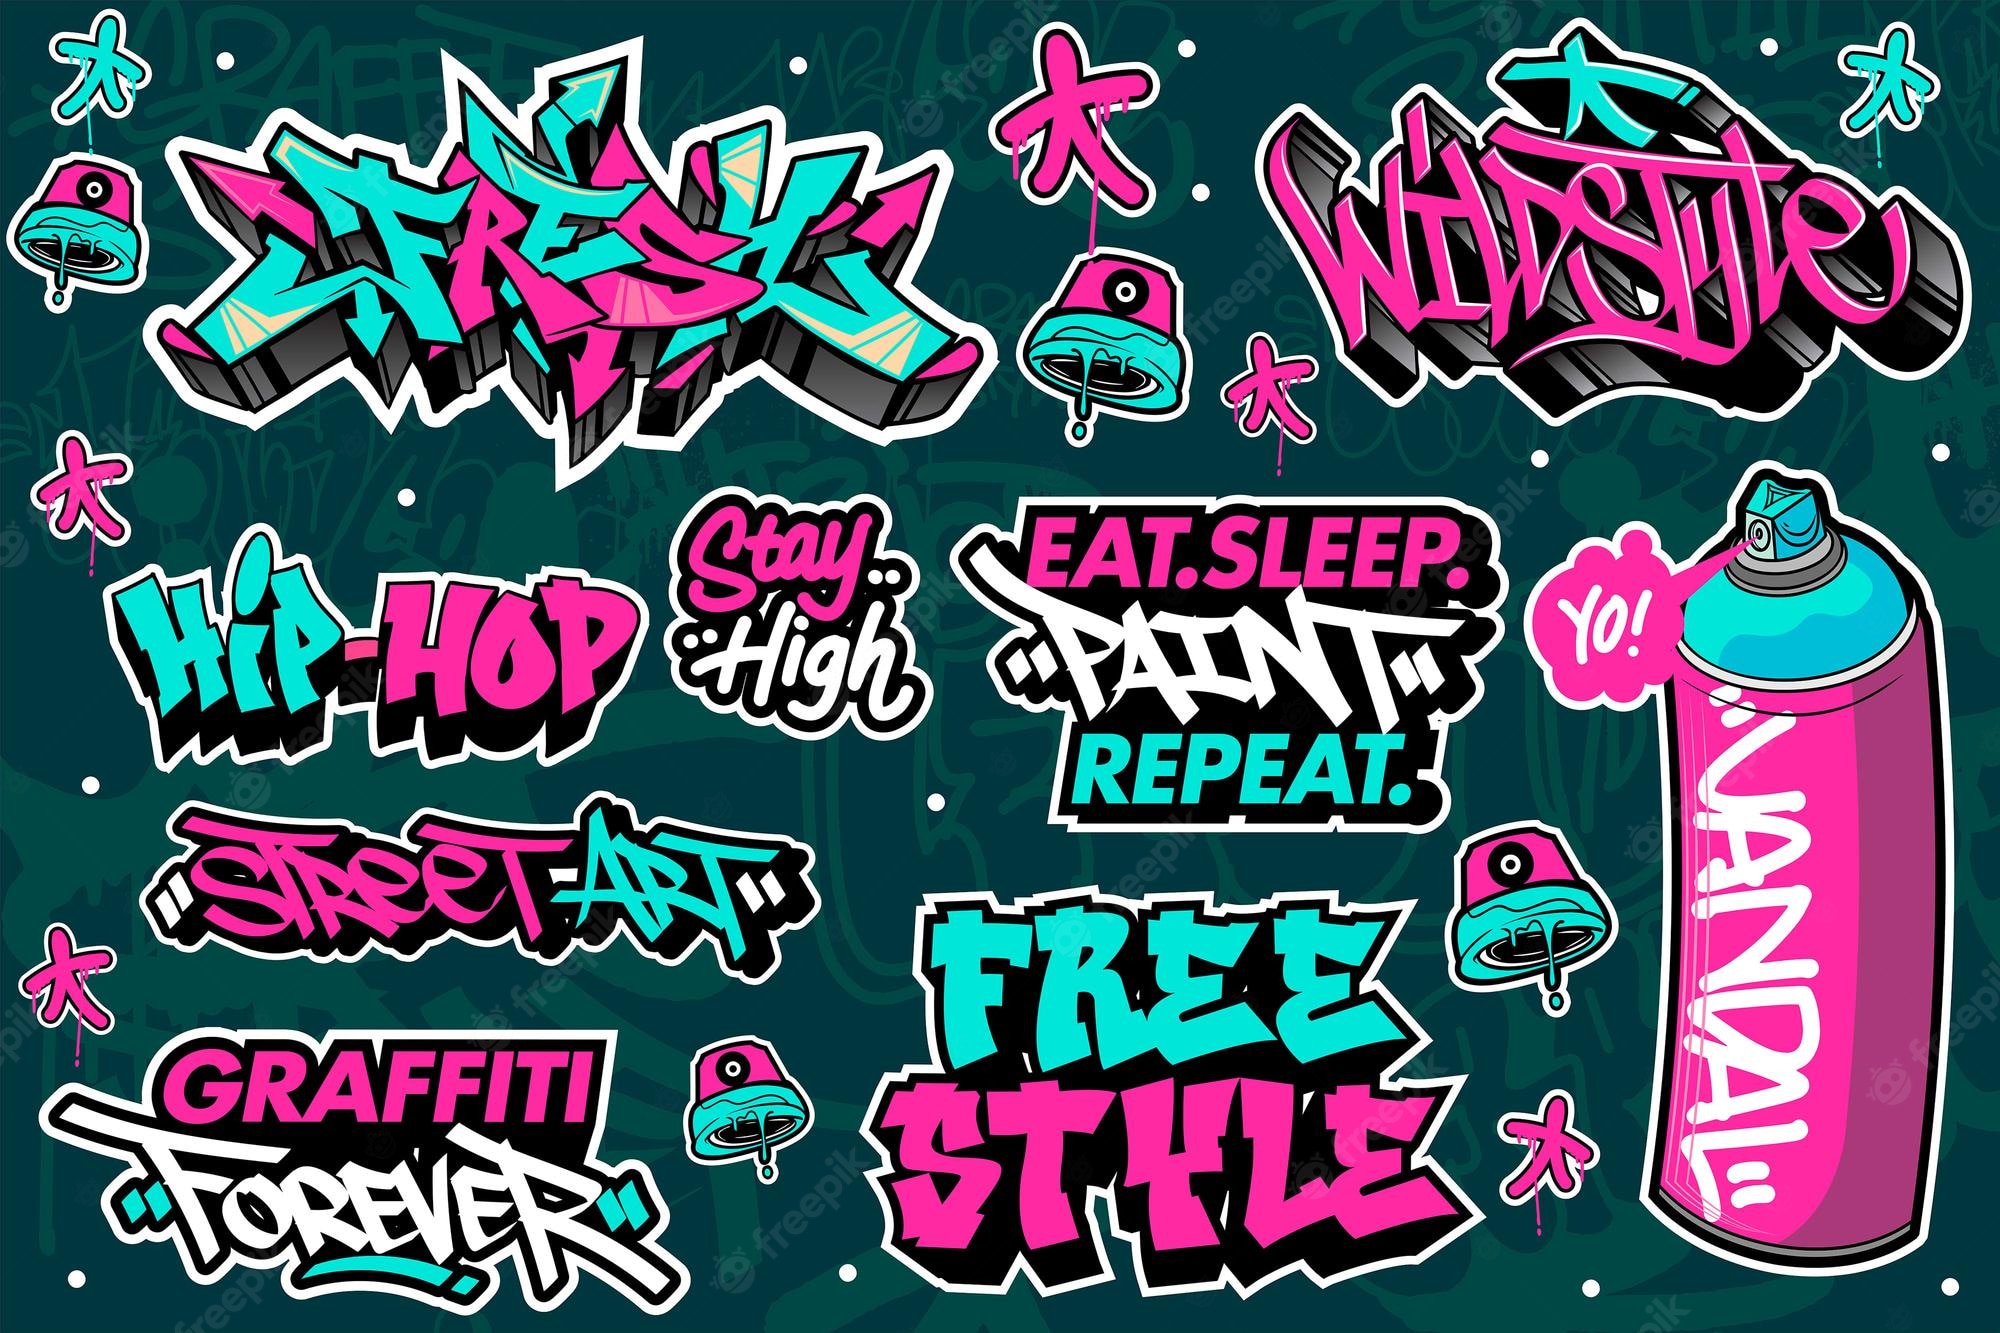 Graffiti Hip Hop Cartoon Image. Free Vectors, & PSD